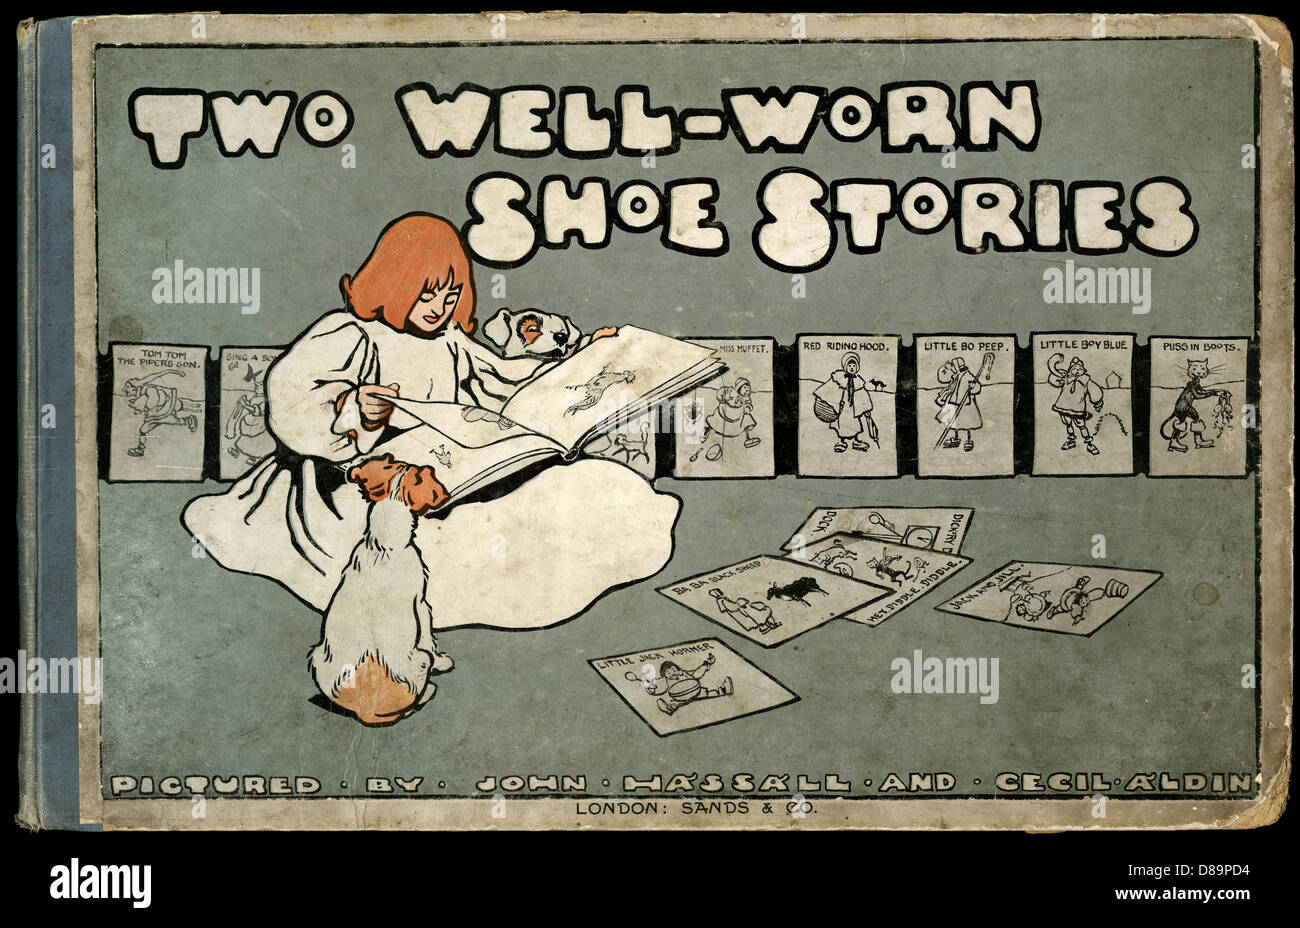 Couverture de livre, deux histoires de chaussures bien portées Banque D'Images